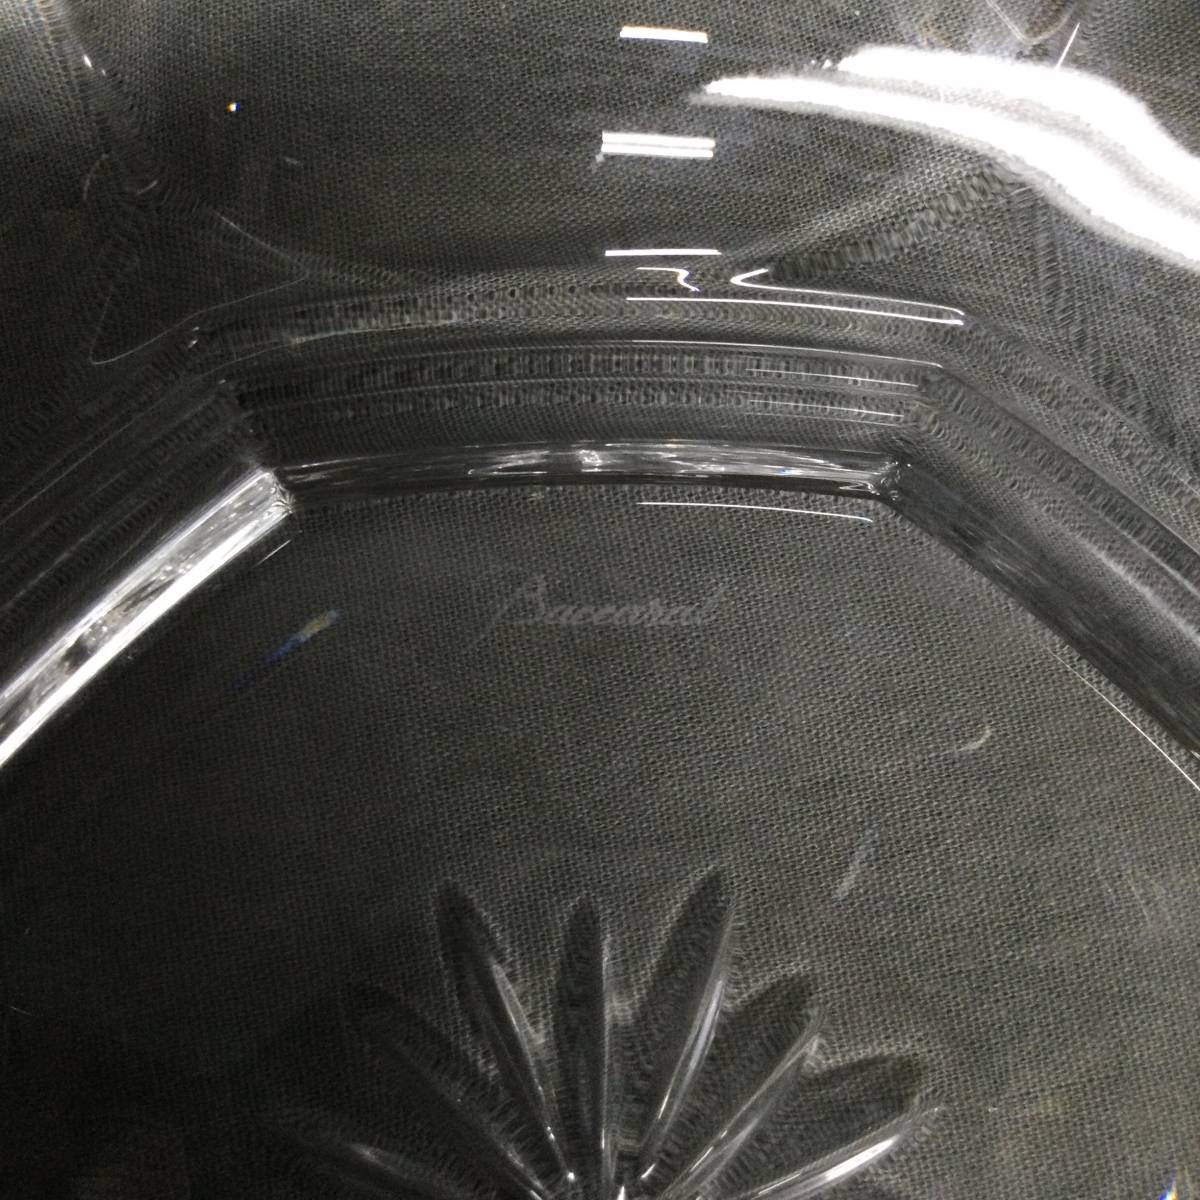 051116 249969-2 Baccarat バカラ ボウル ボール サラダボウル 深皿 クリスタル ガラス テーブルウェア 食器 洋食器 箱付の画像6